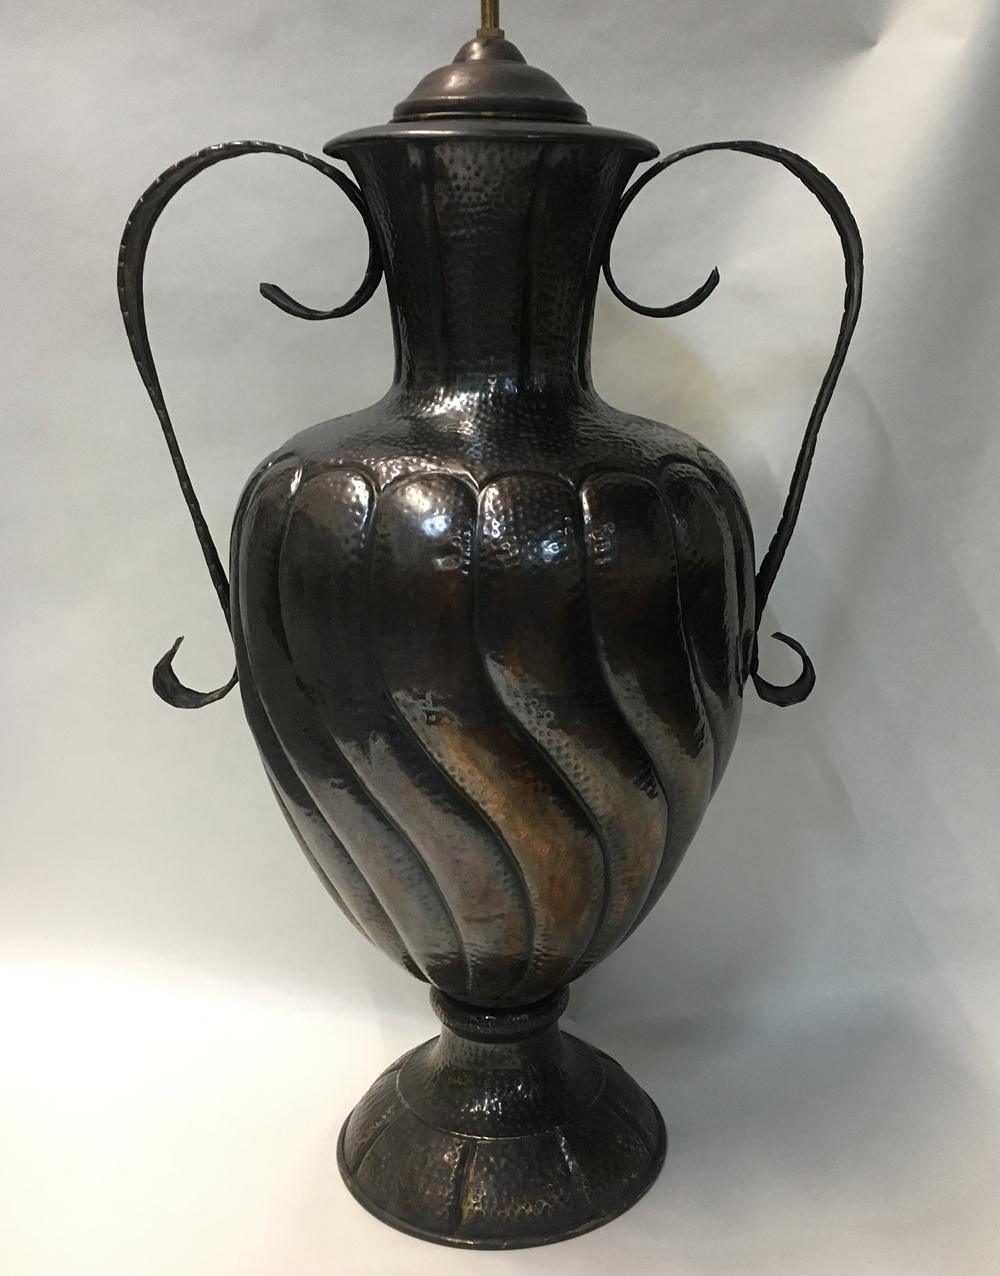 Ein Paar italienische, gehämmerte Vasen aus den 1920er Jahren, die als Lampen montiert sind.

Abmessungen:
Höhe des Körpers: 26